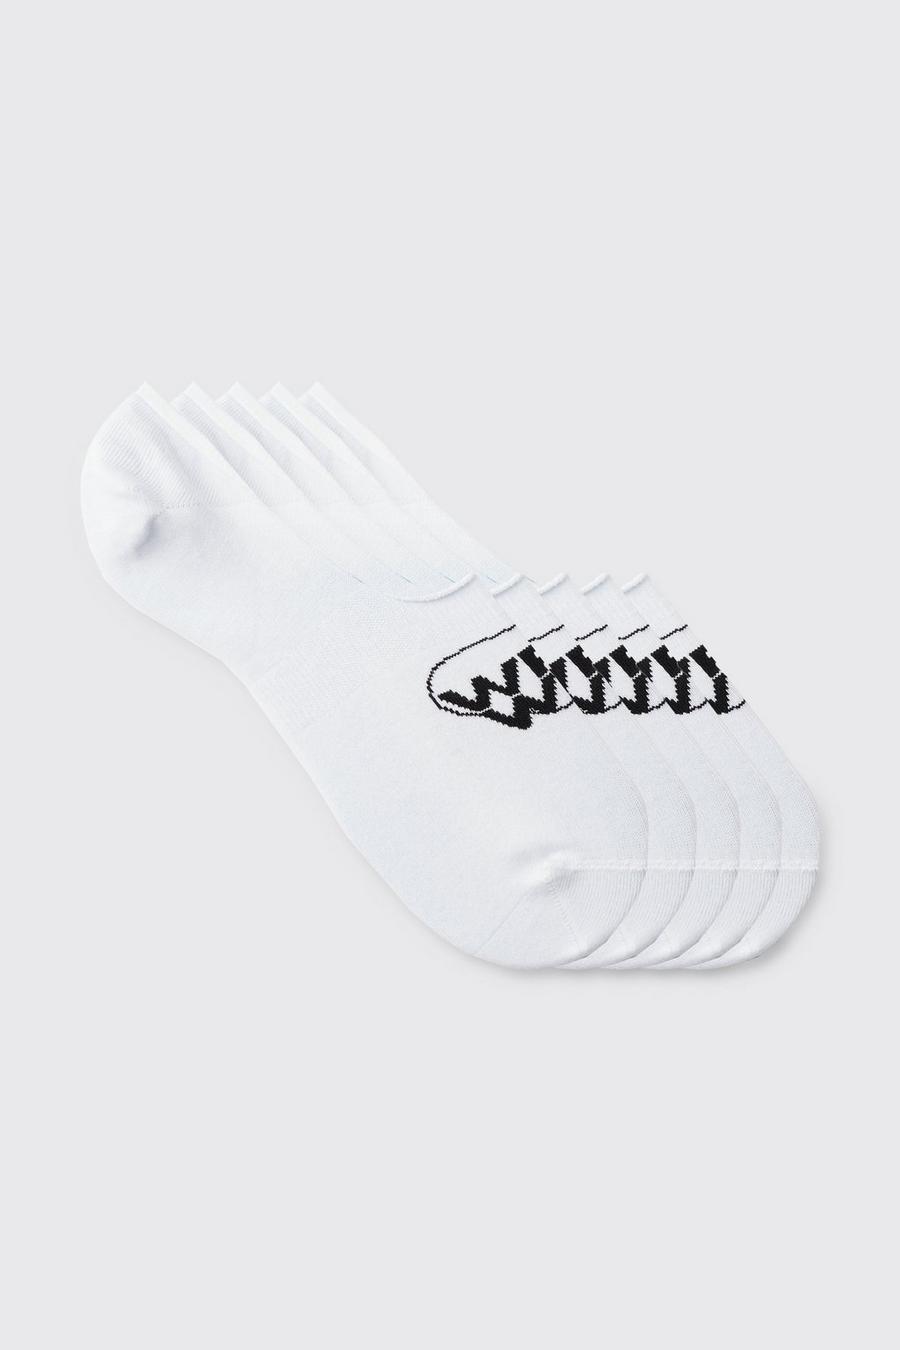 Pack de 5 pares de calcetines invisibles con logo Worldwide, White